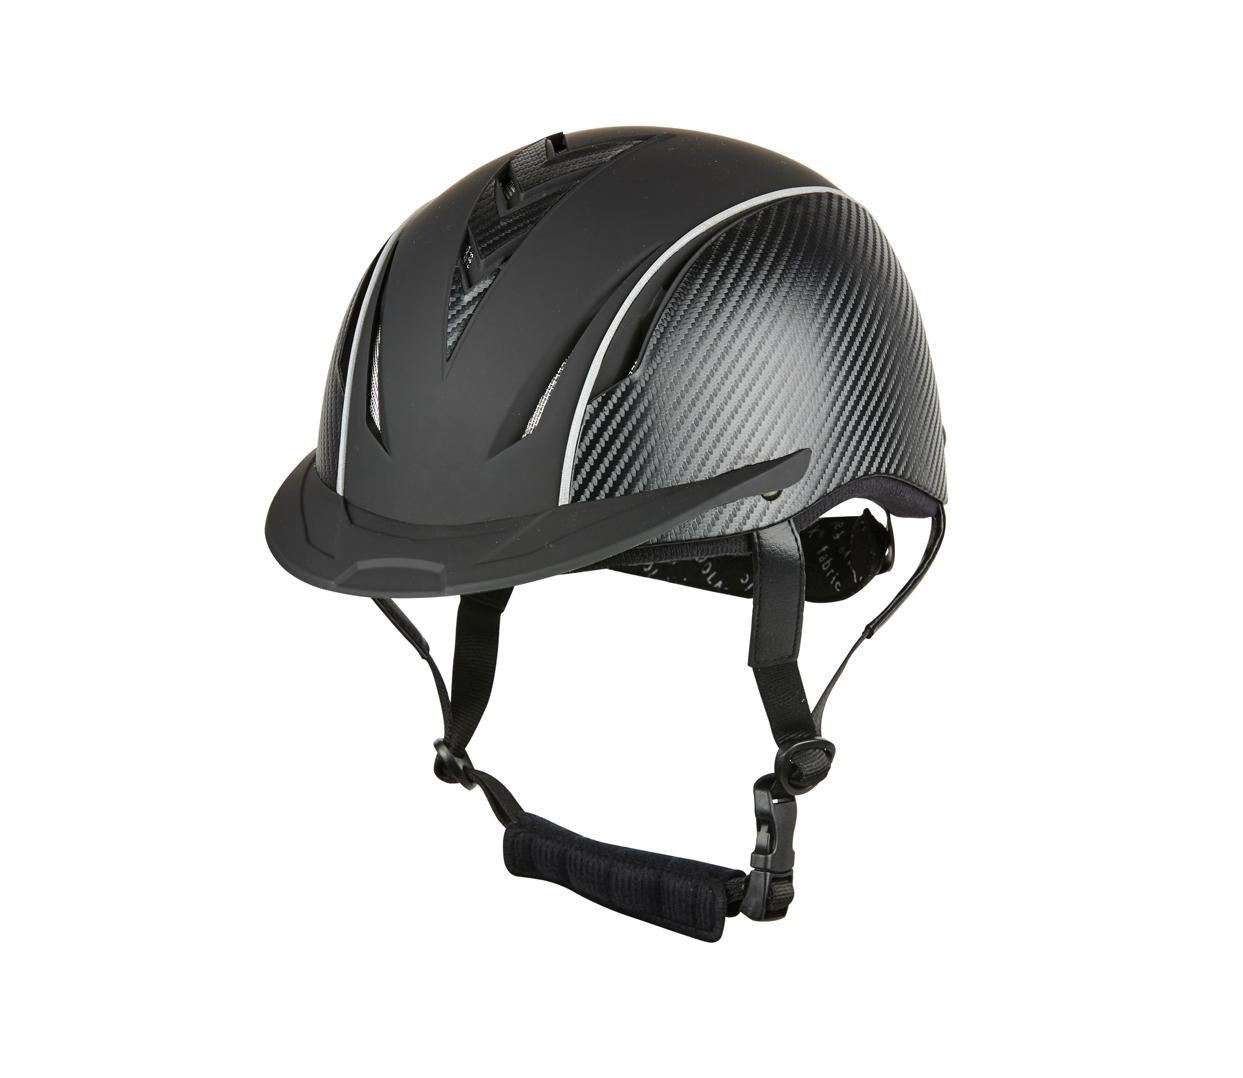 Dublin Airation Arrow Lite Helmet